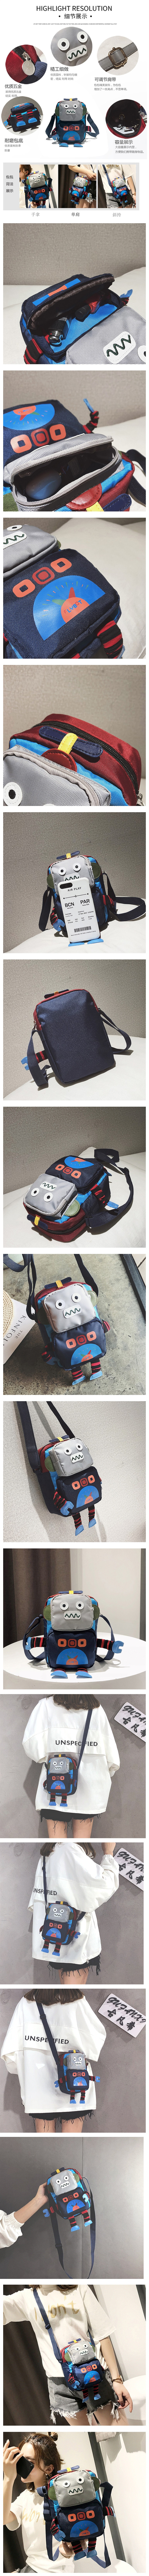 Robot Mini Hand Bag